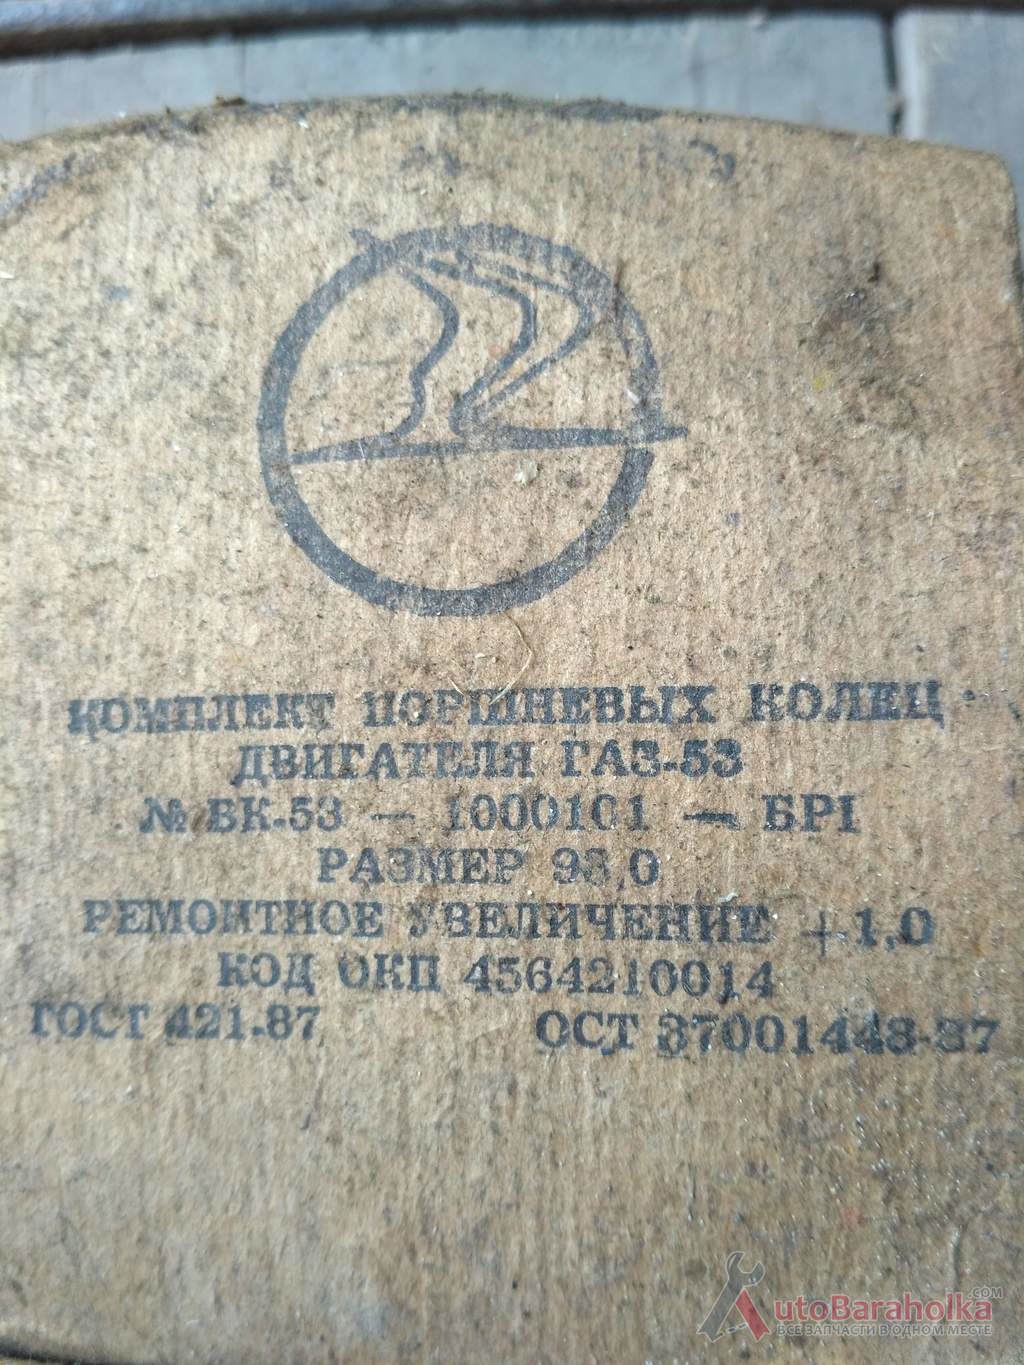 Продам Комплект поршневых колец на двигатель ГАЗ-53 размер 93.0 Краматорск